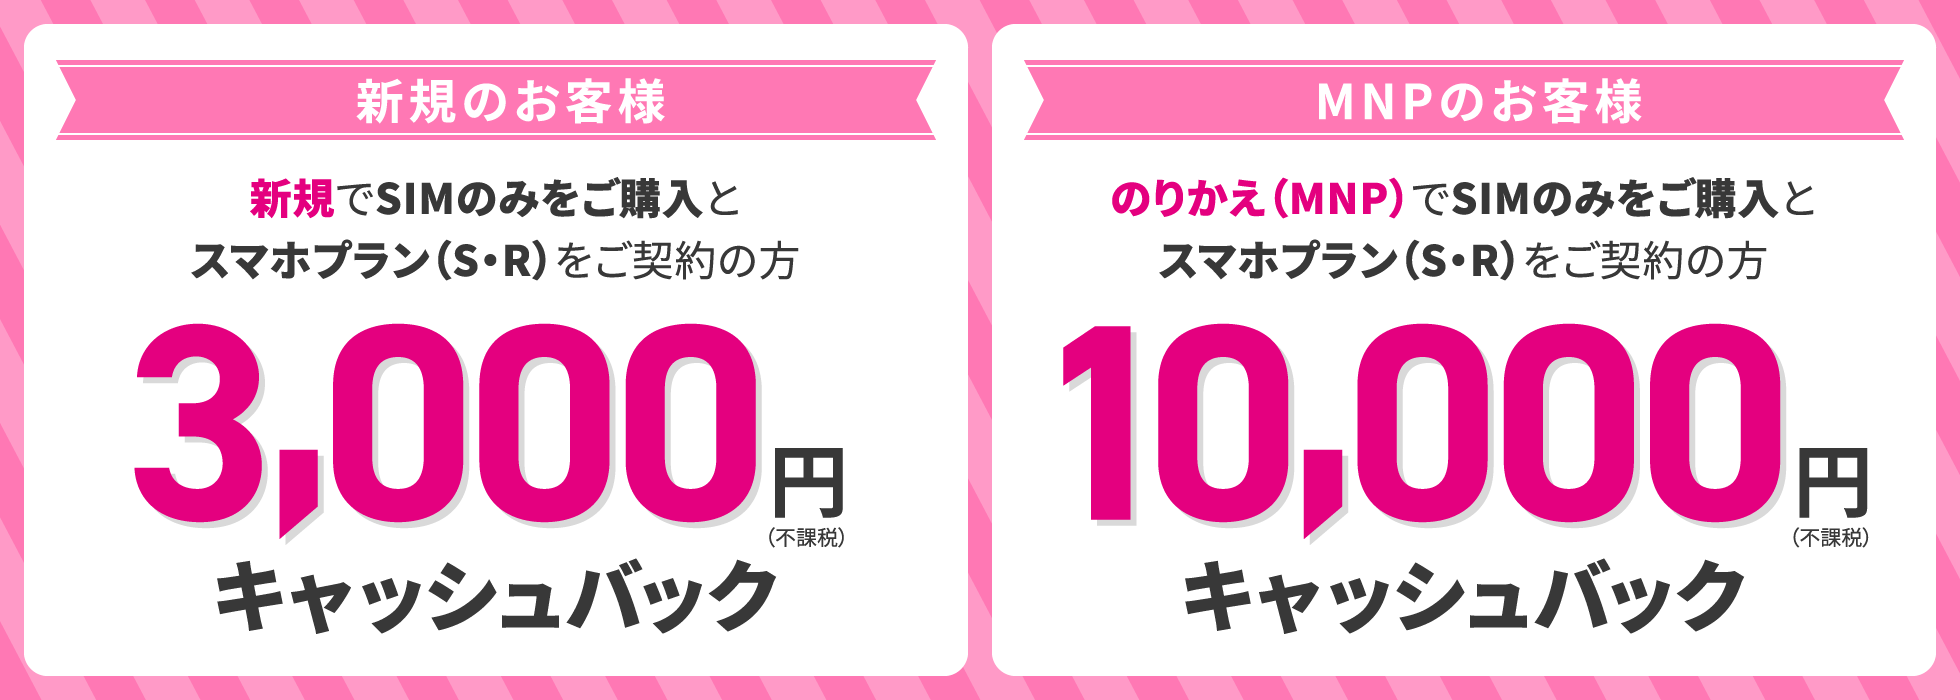 UQモバイル 最大10,000円キャッシュバック